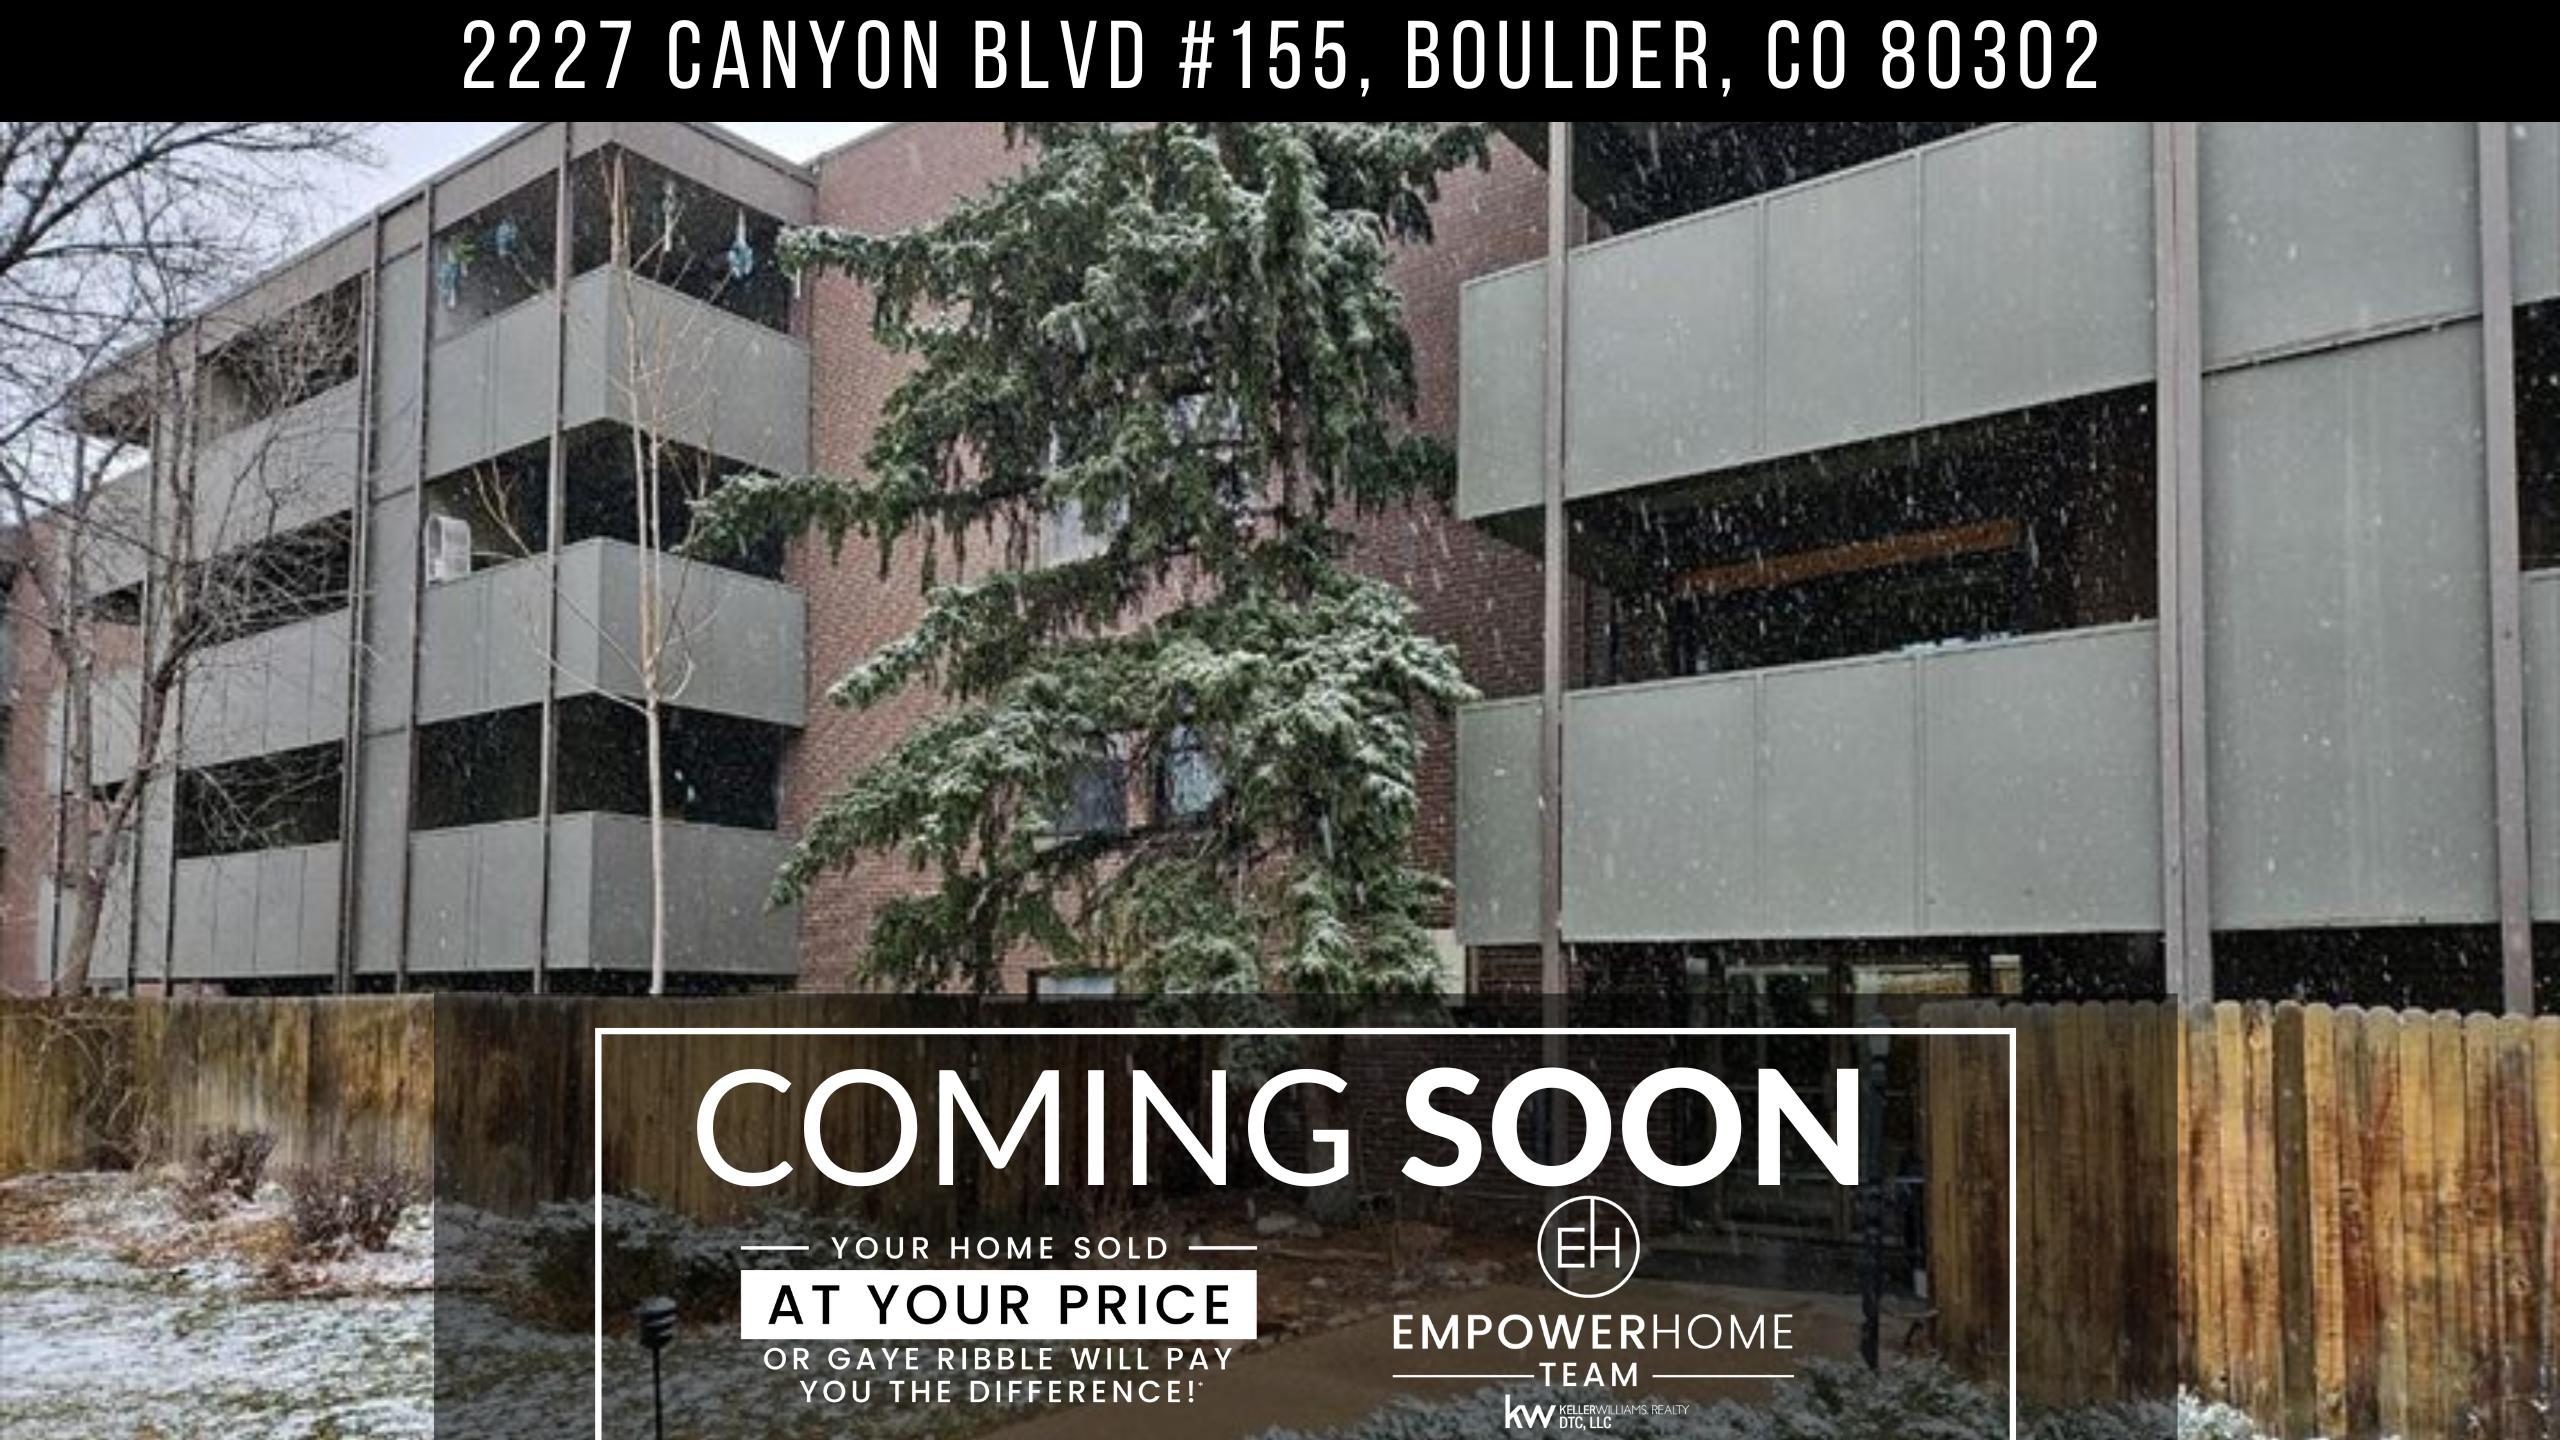 2227 Canyon Blvd #155, Boulder, CO 80302